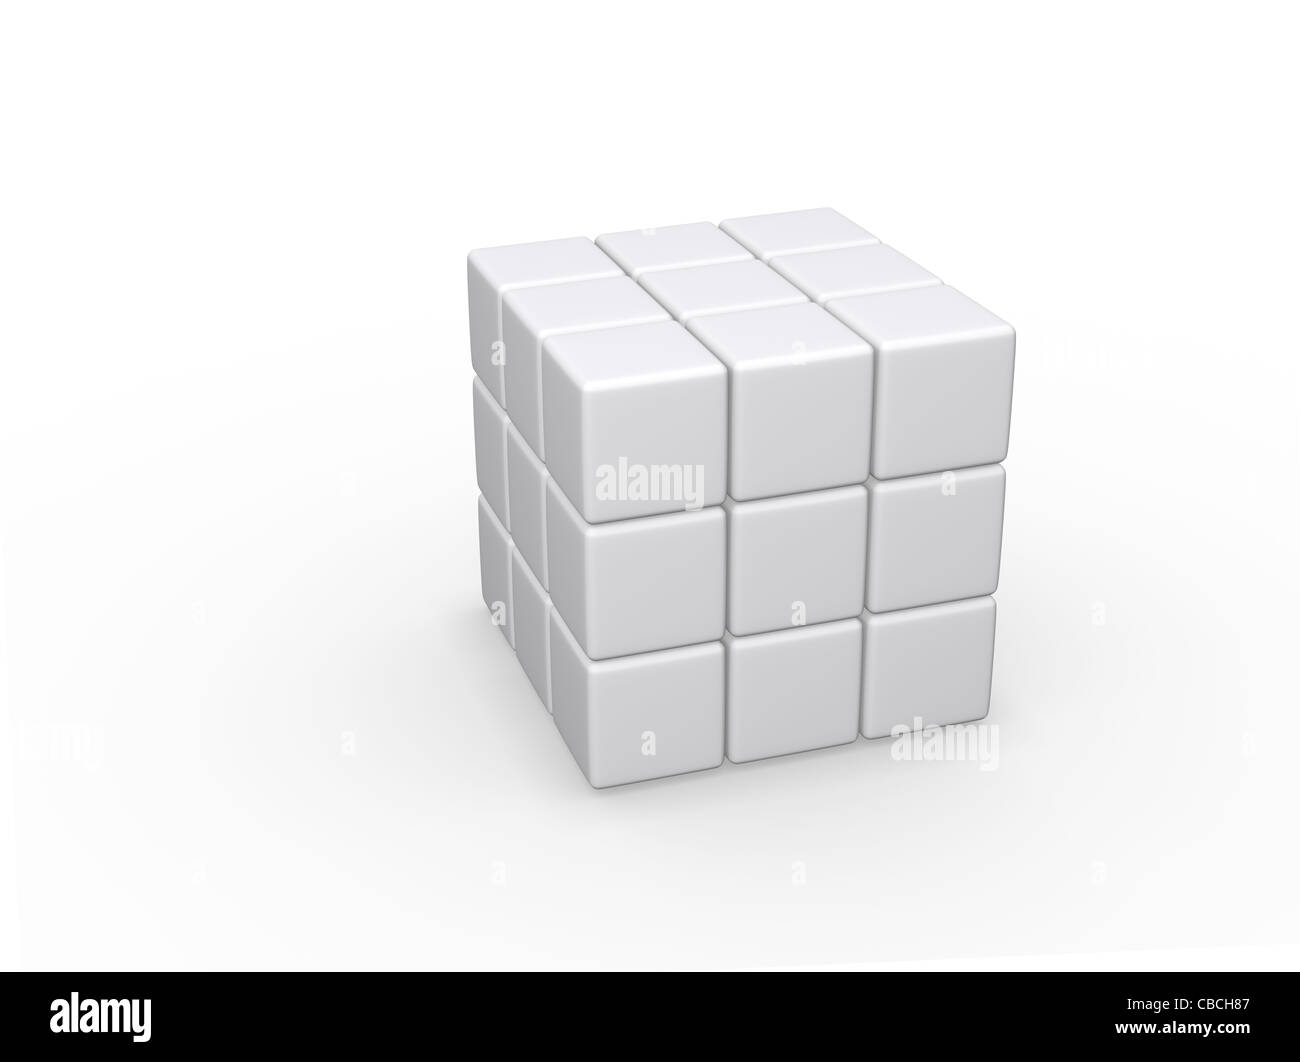 Imagen 3D de un cubo rompecabezas en blanco, similar al cubo de Rubik.  Aislado sobre un fondo blanco Fotografía de stock - Alamy